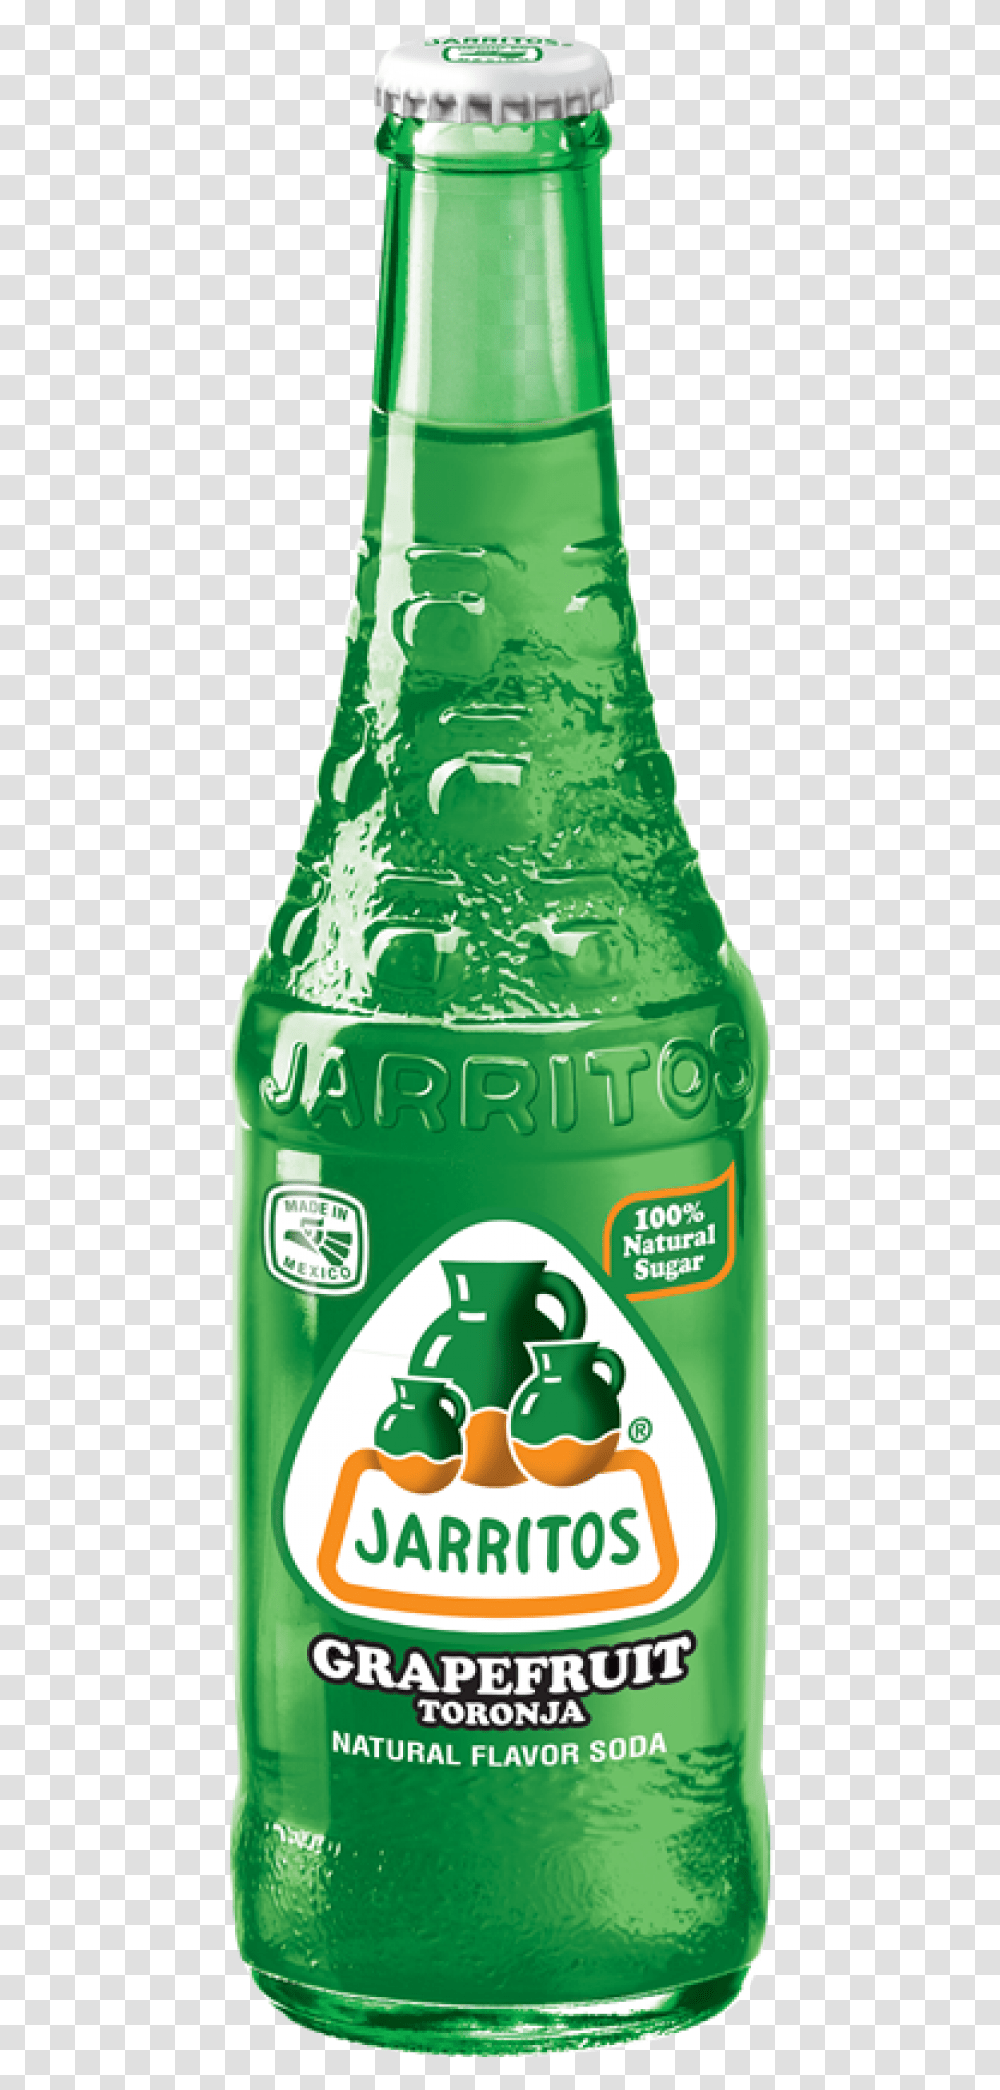 Jarritos Grapefruit, Beverage, Drink, Beer, Alcohol Transparent Png